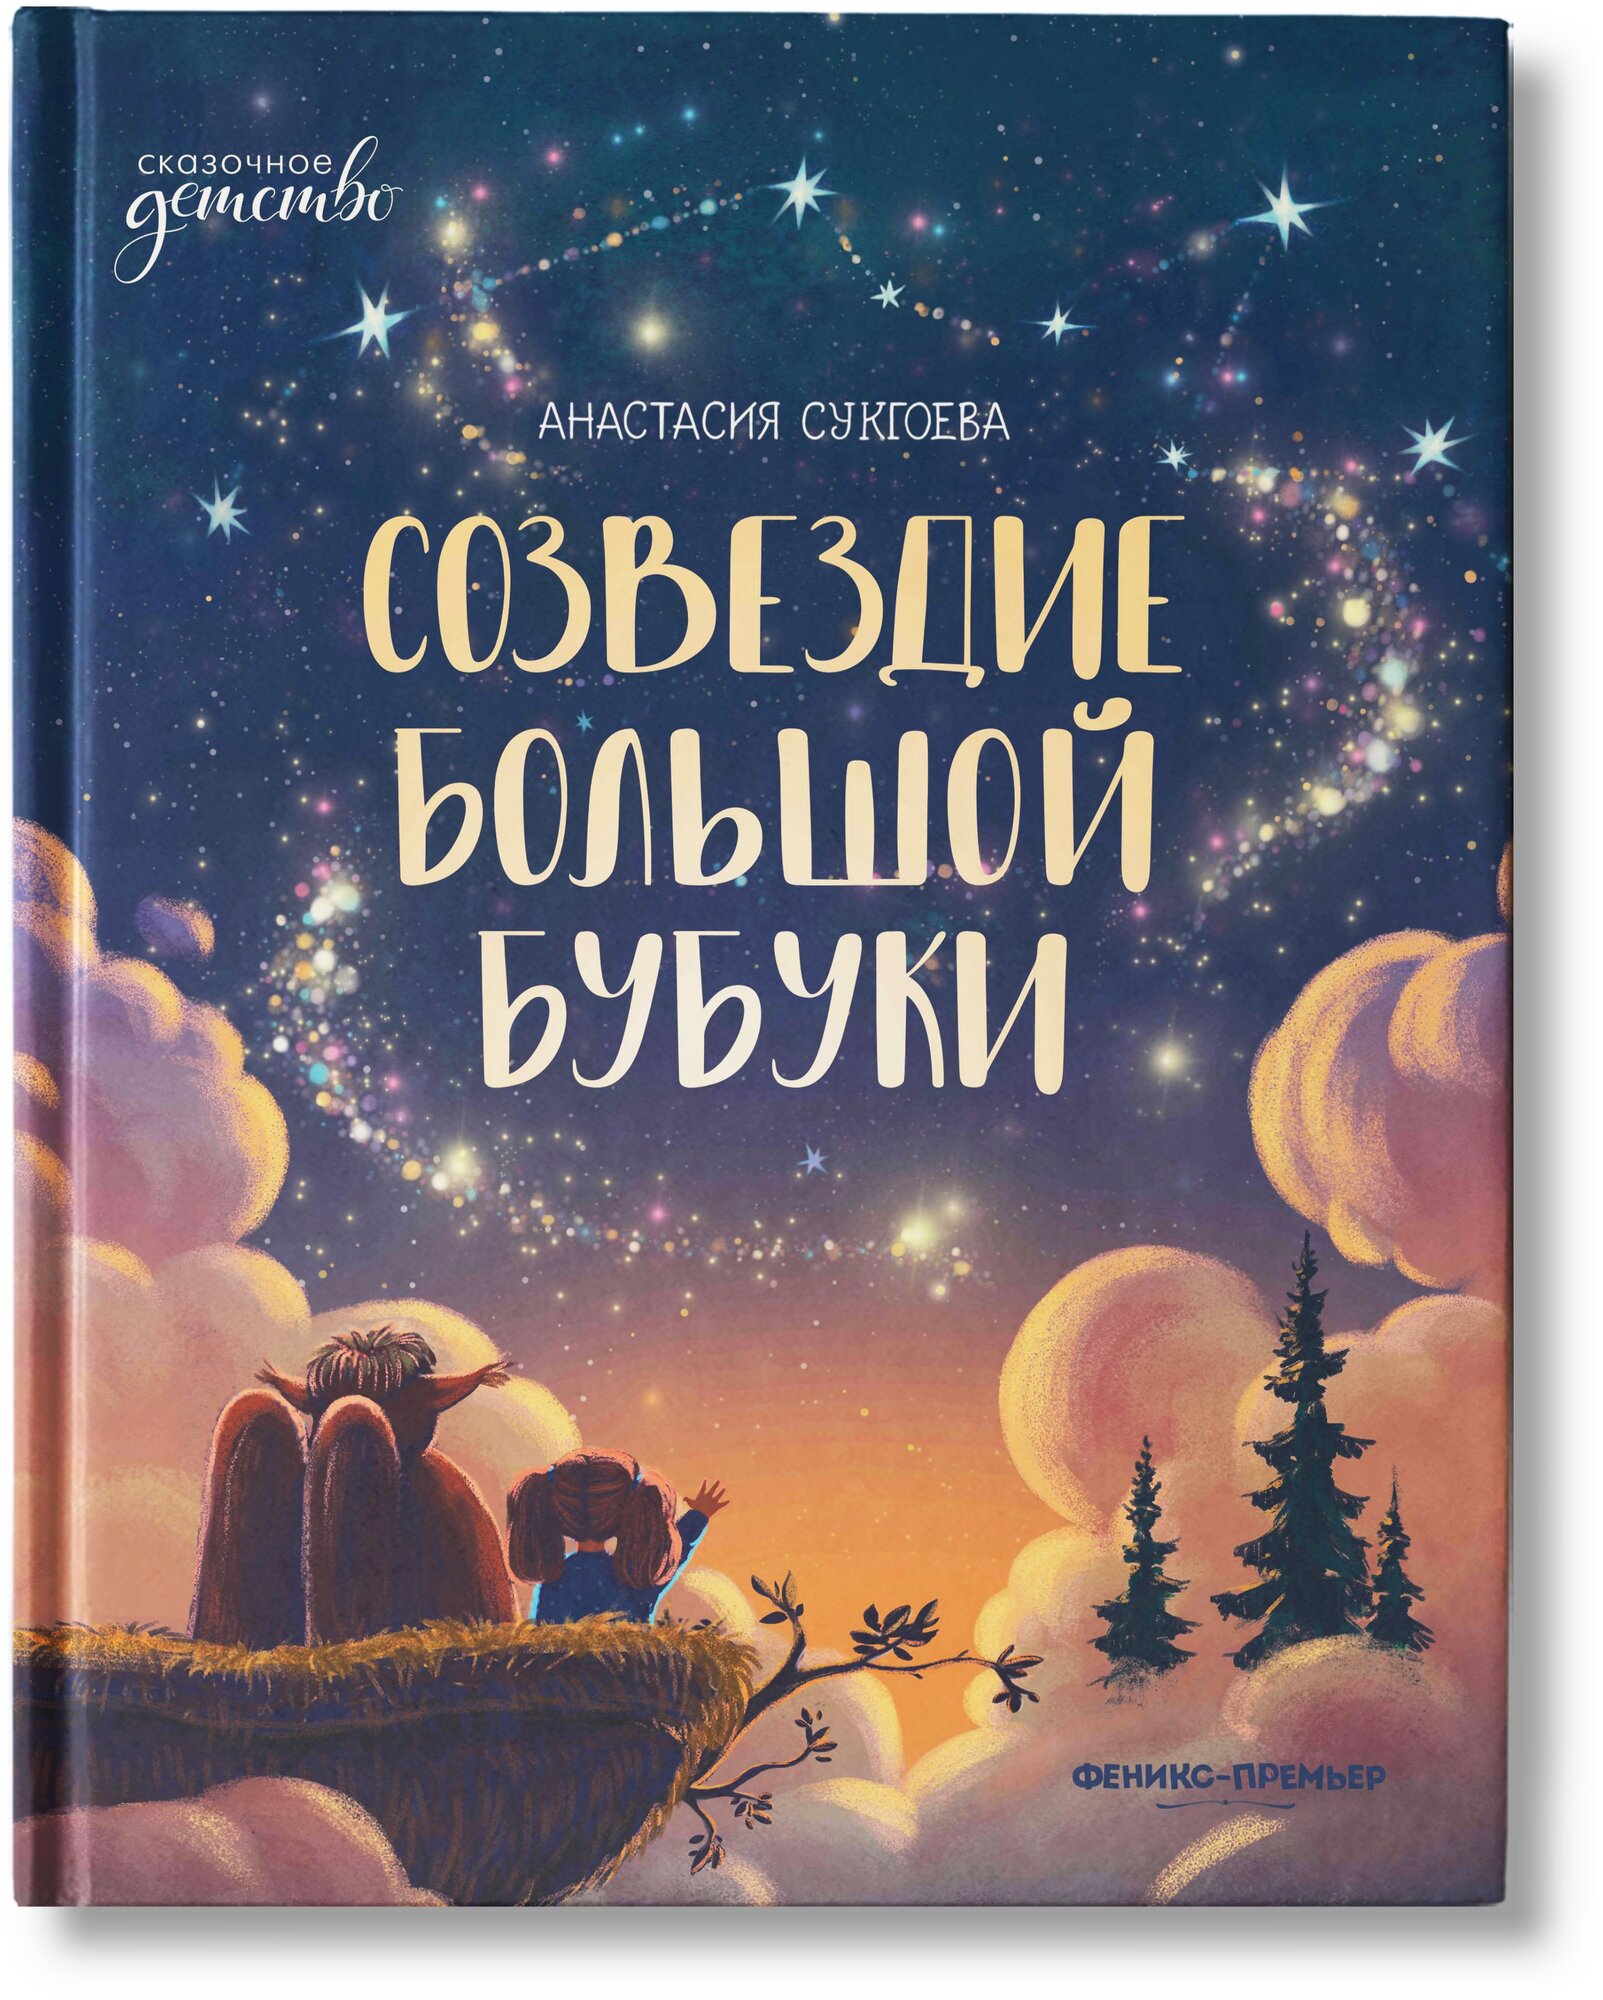 Созвездие Большой Бубуки. Сказка для детей | Сукгоева Анастасия Михайловна